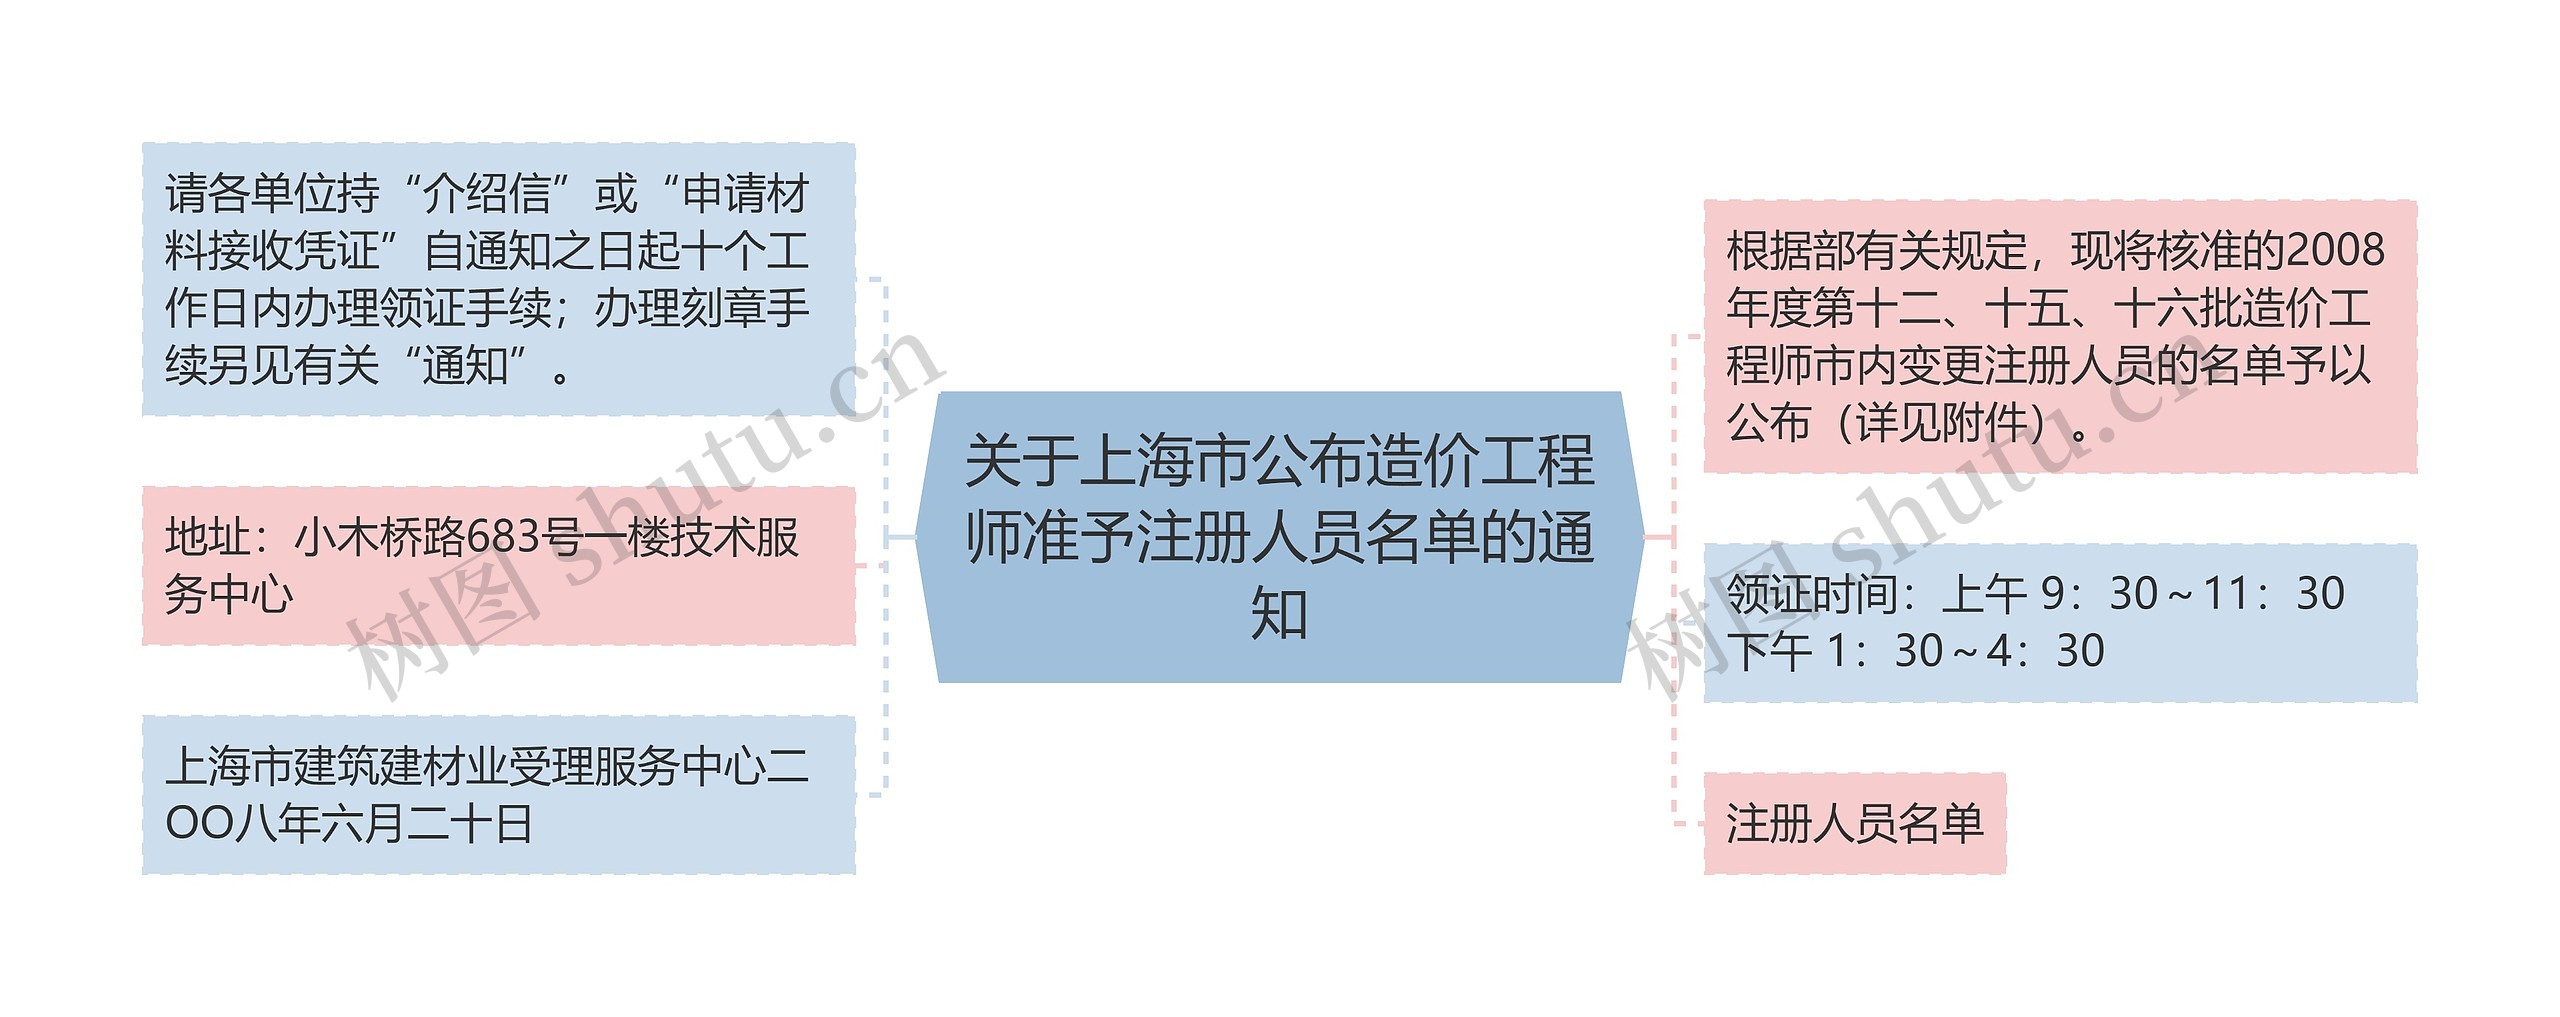 关于上海市公布造价工程师准予注册人员名单的通知